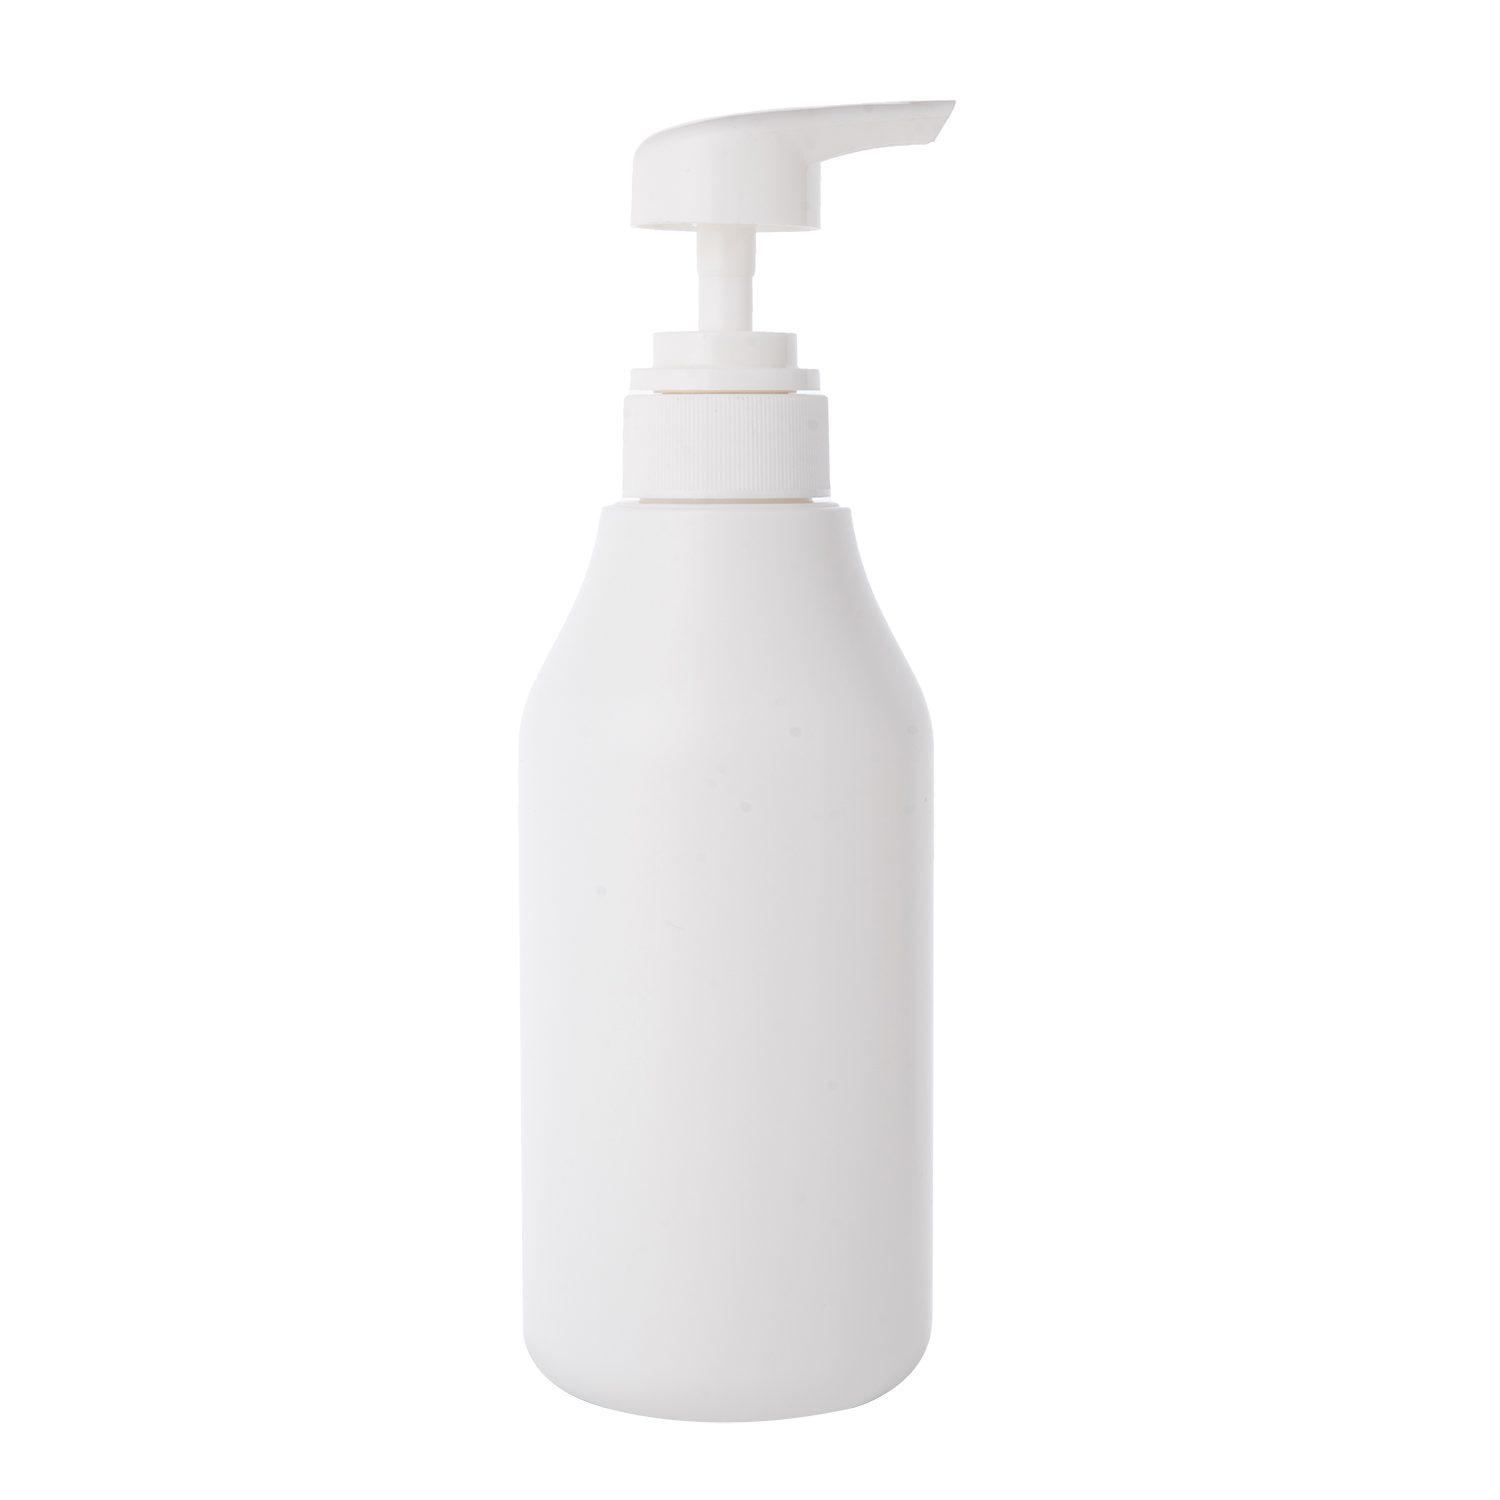 300ml 500ml PE Plastic Bottle Shampoo Bottle Laundry Detergent bottle